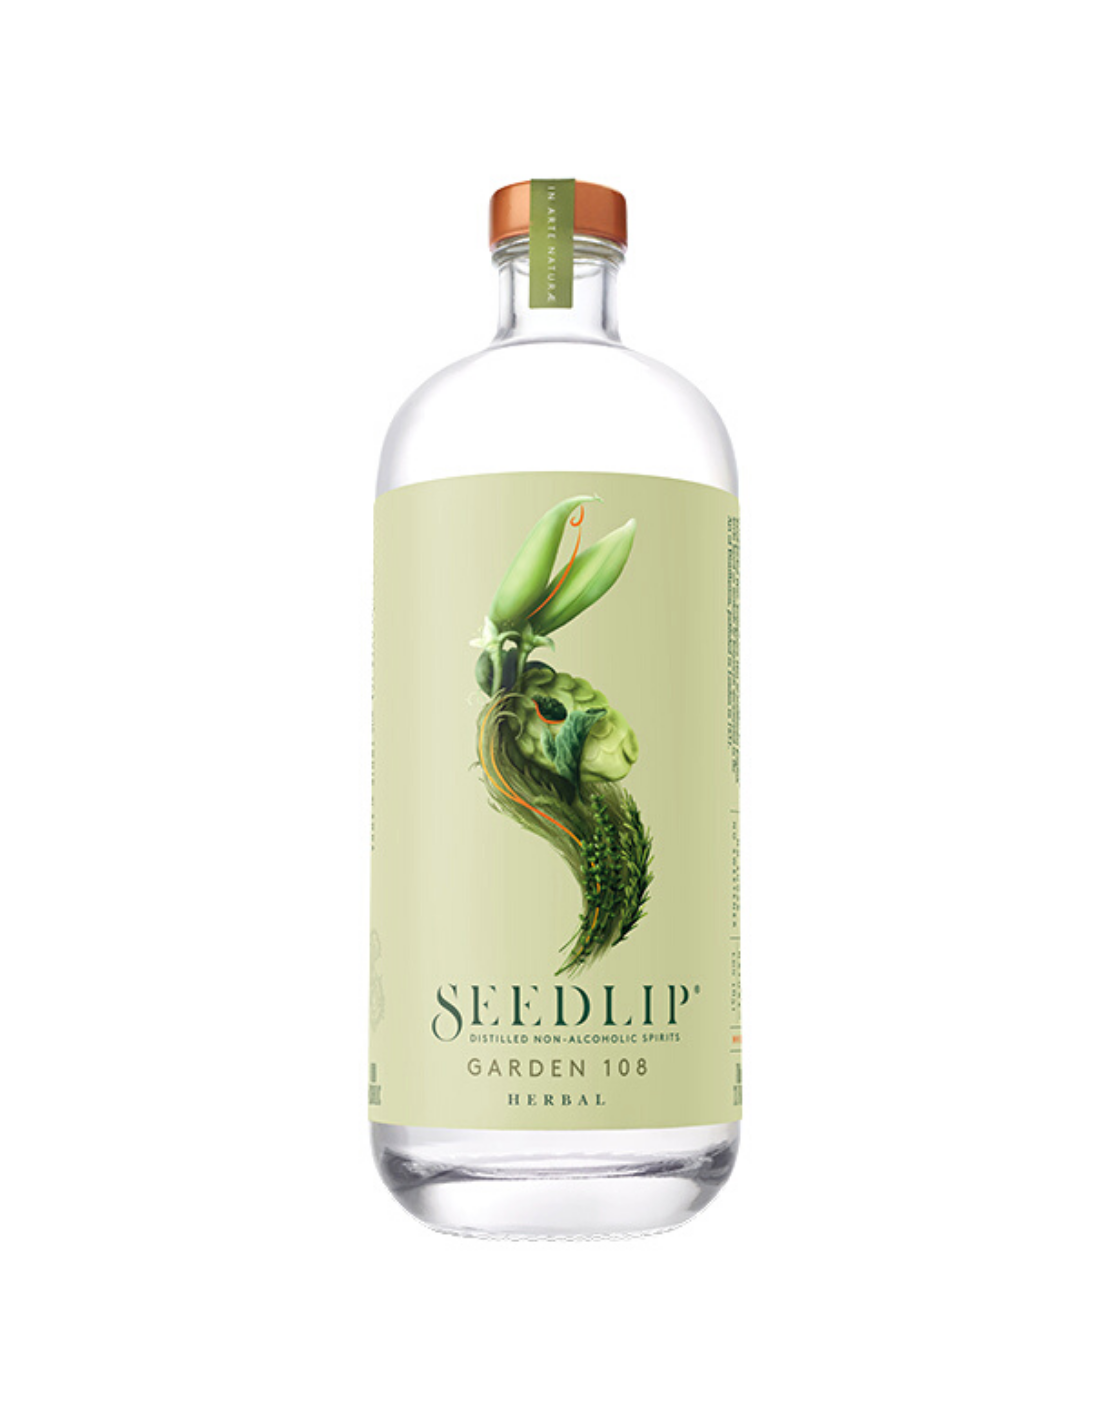 Seedlip Garden 108 Distilled Non-Alcoholic Spirit, 0.7L, Marea Britanie alcooldiscount.ro